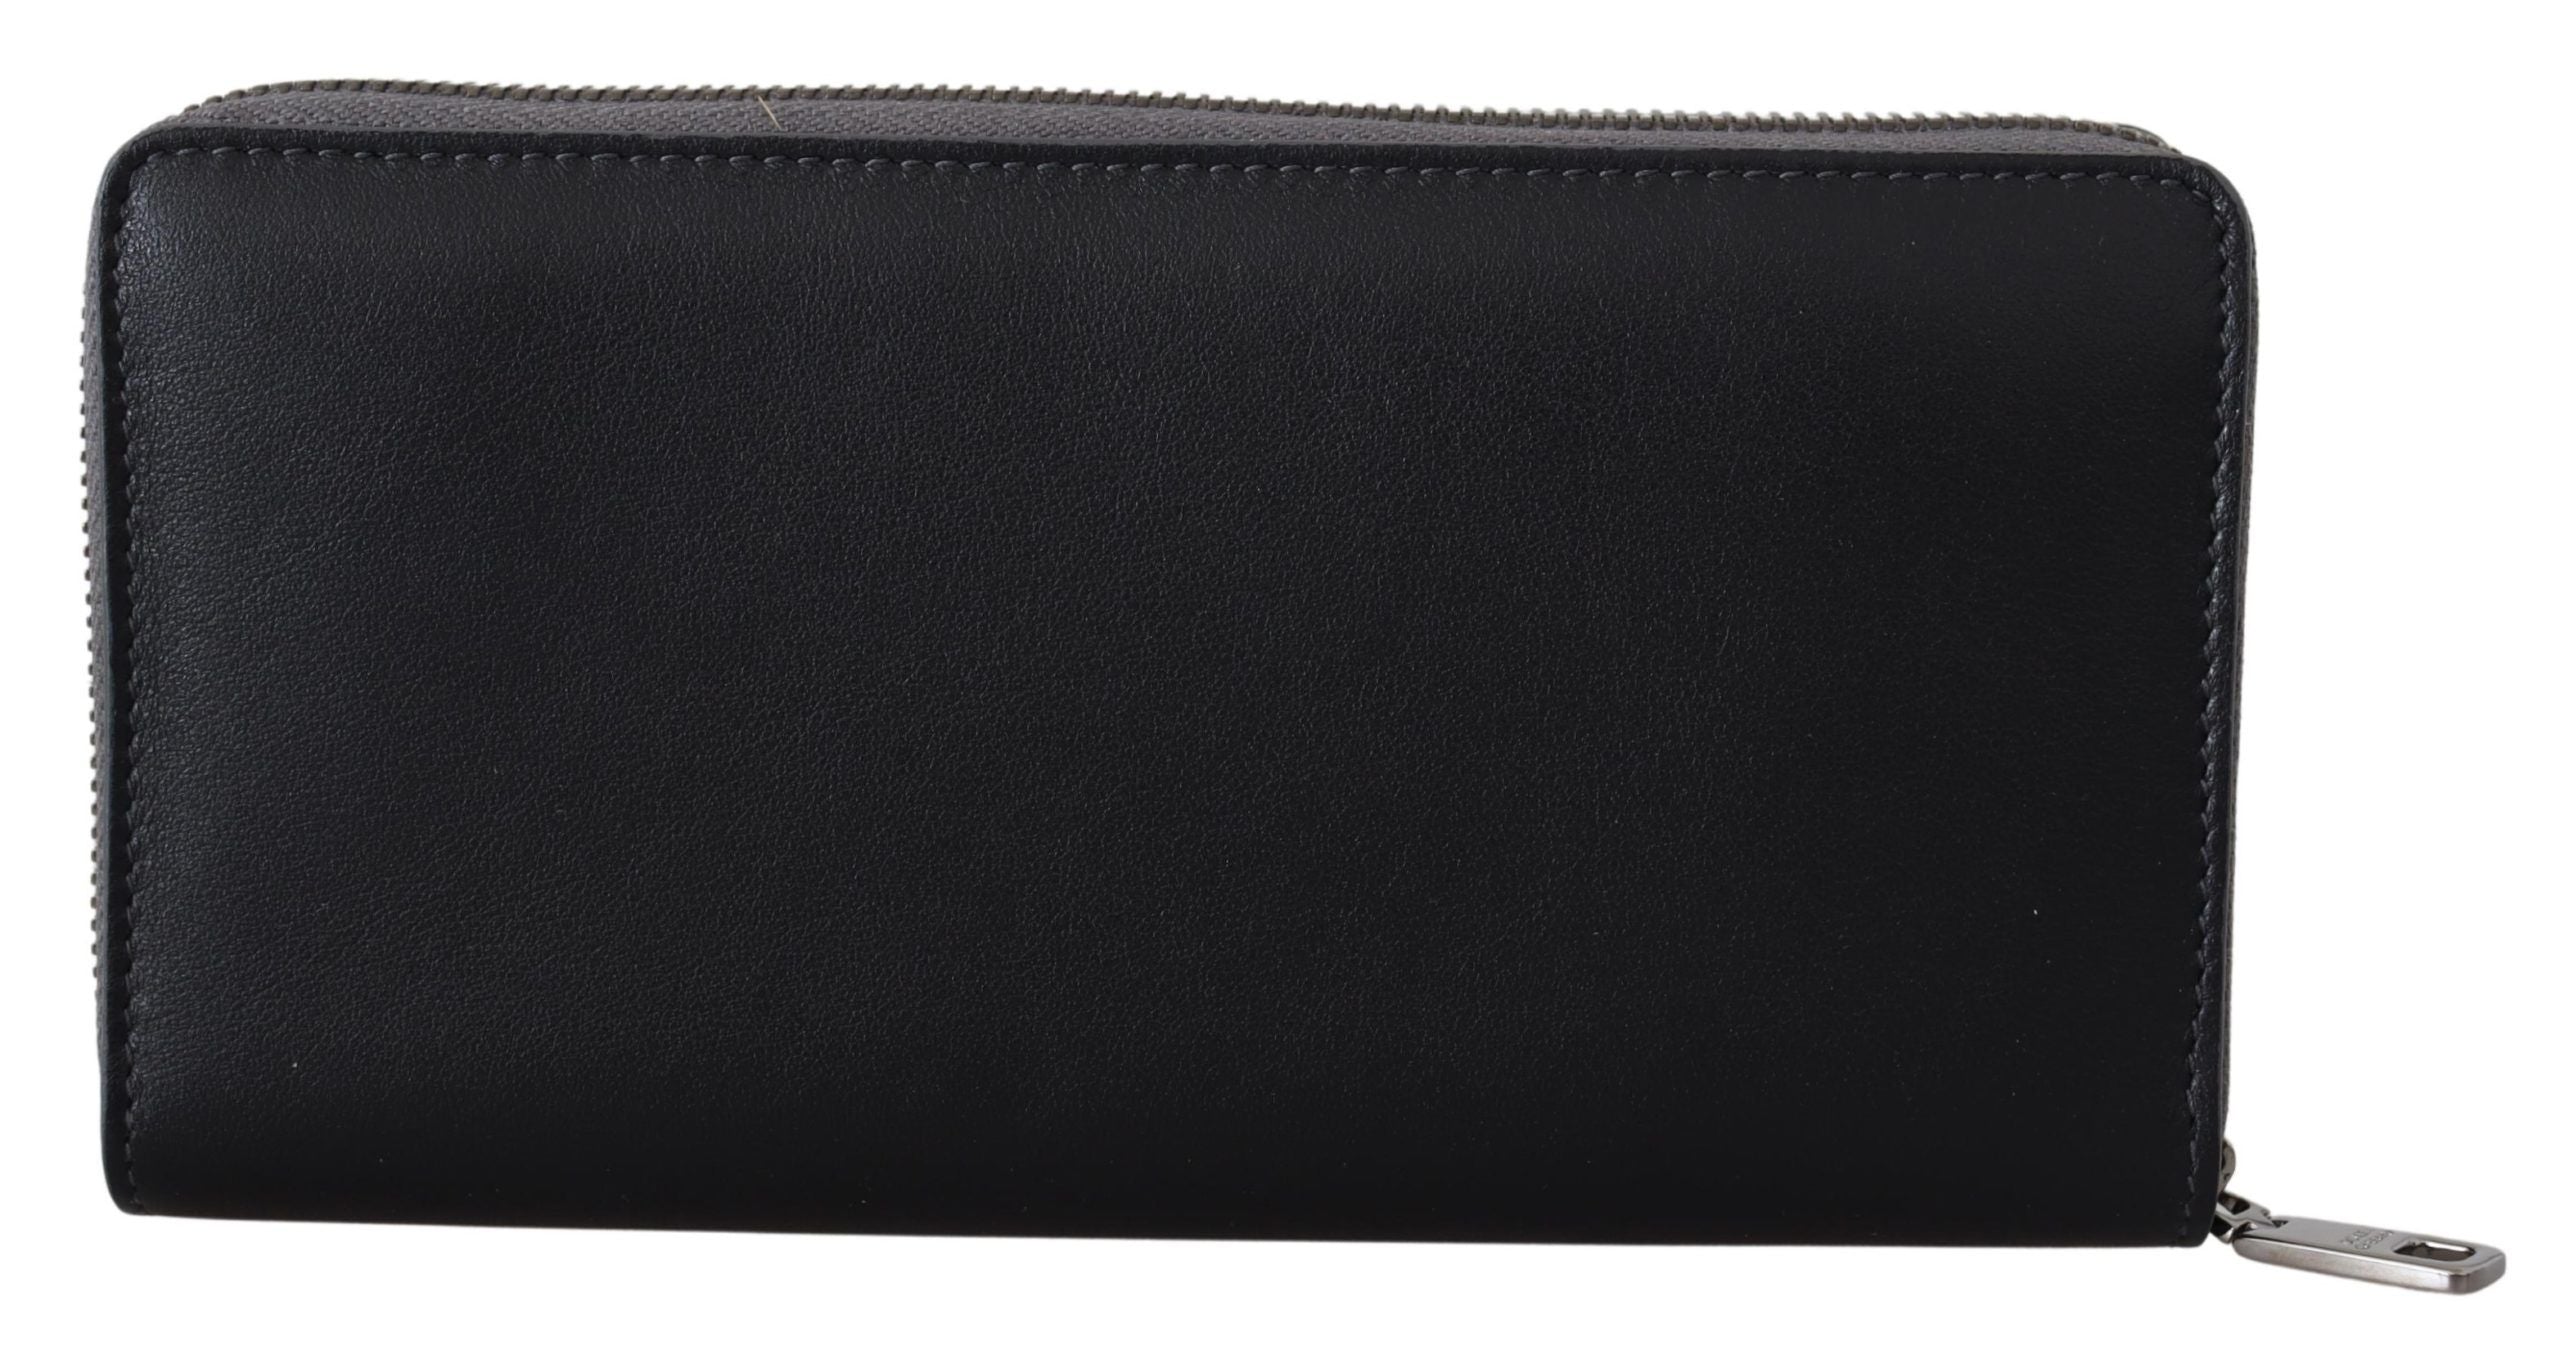 Dolce & Gabbana Elegant Textured Leather Zip-Around Wallet